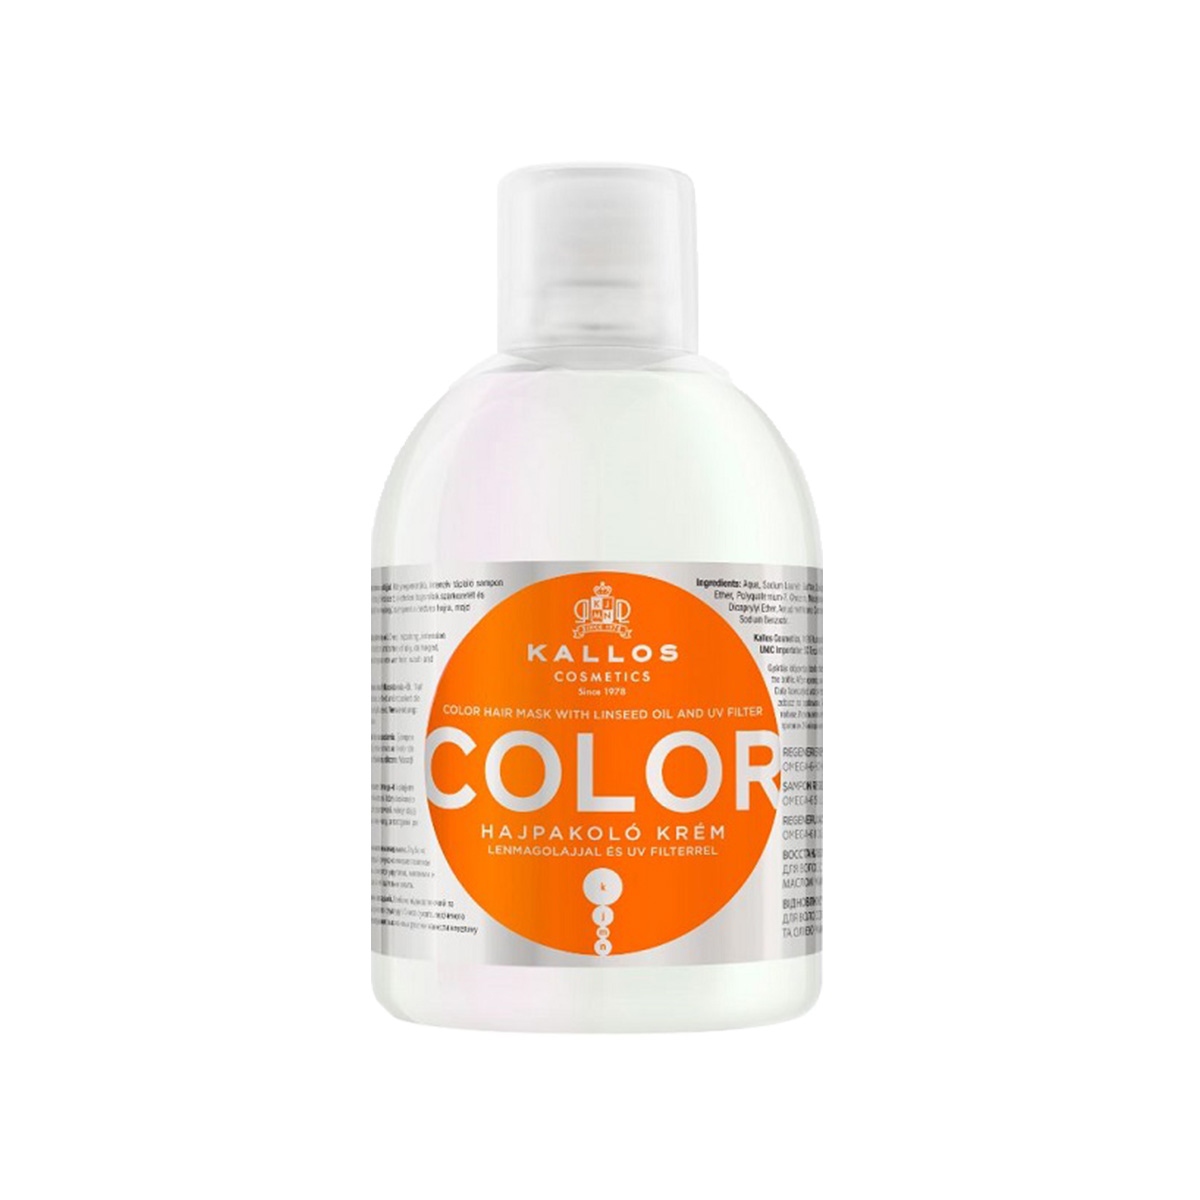 kallos produkty do włosów farbowanych cena szampon